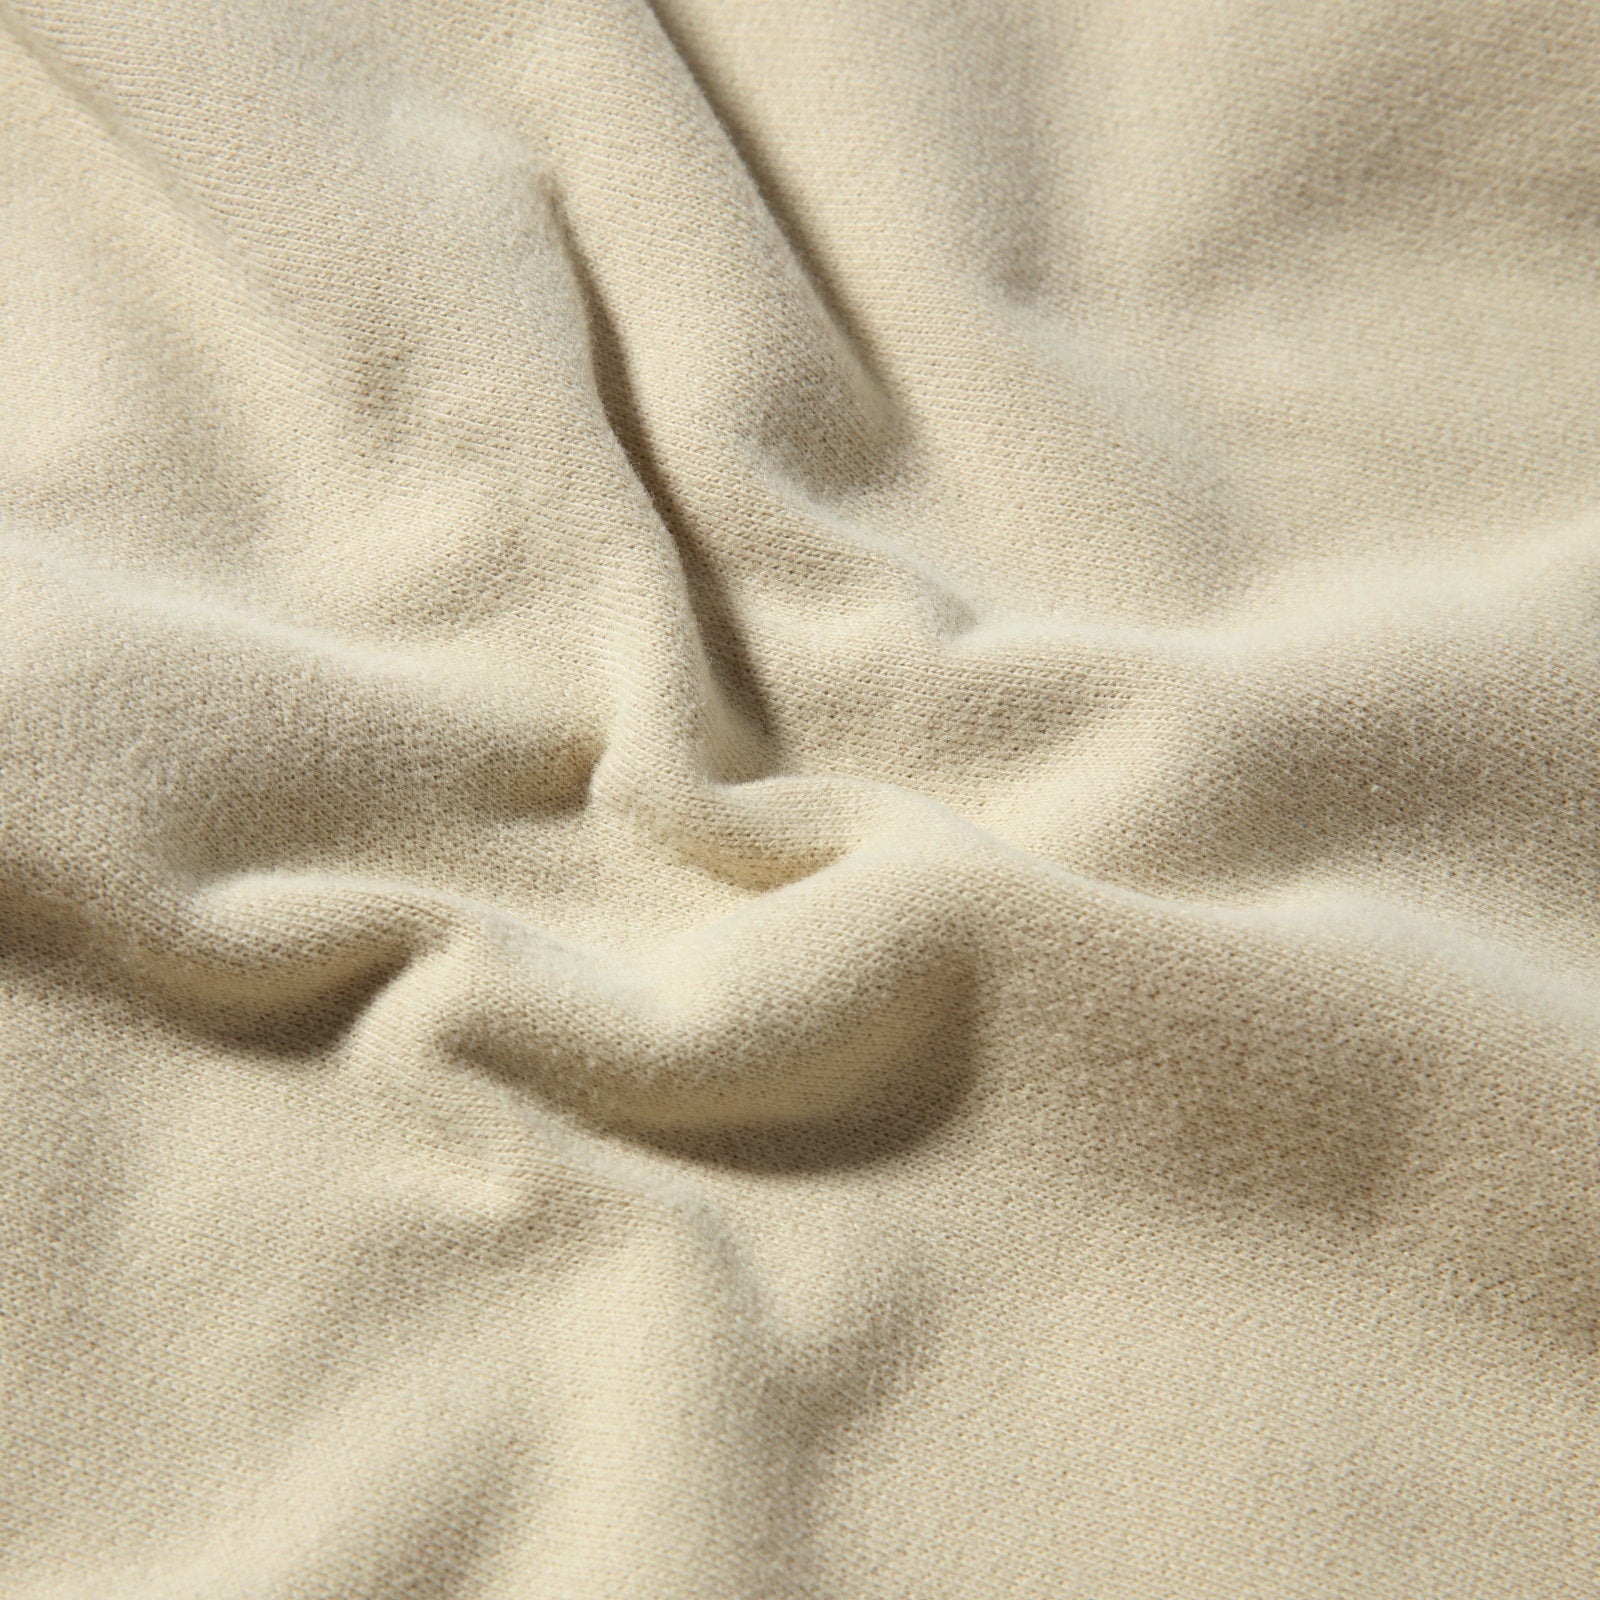 The North Face Oversized Hoodie Gravel. Foto de detalhe do tecido.